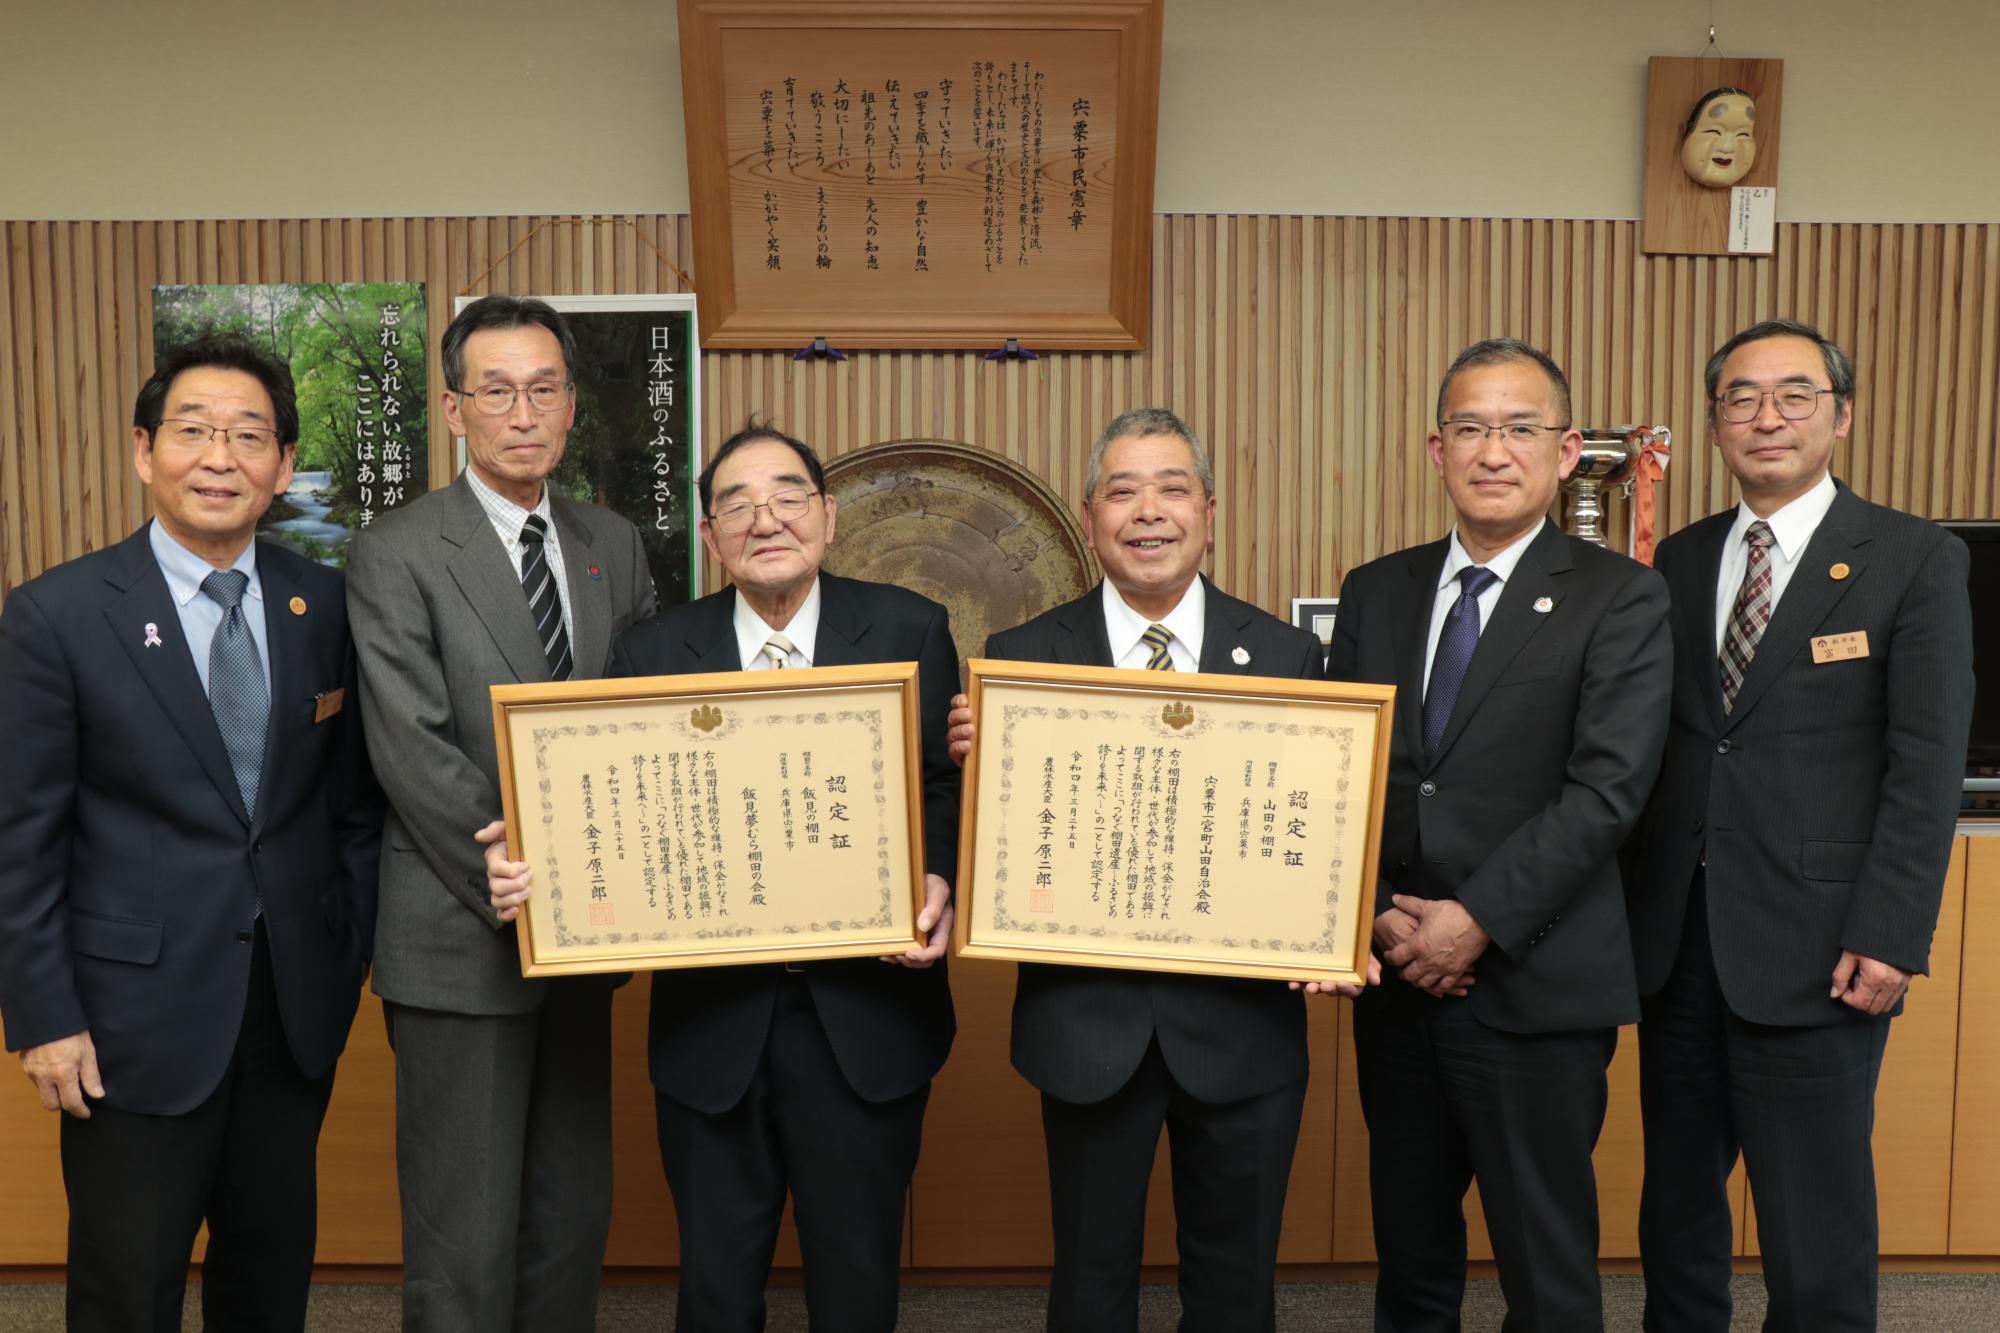 市長、副市長と横一列に並び農林水産省から受けたつなぐ棚田遺産の認定証を手に笑顔を見せる地元関係者の写真